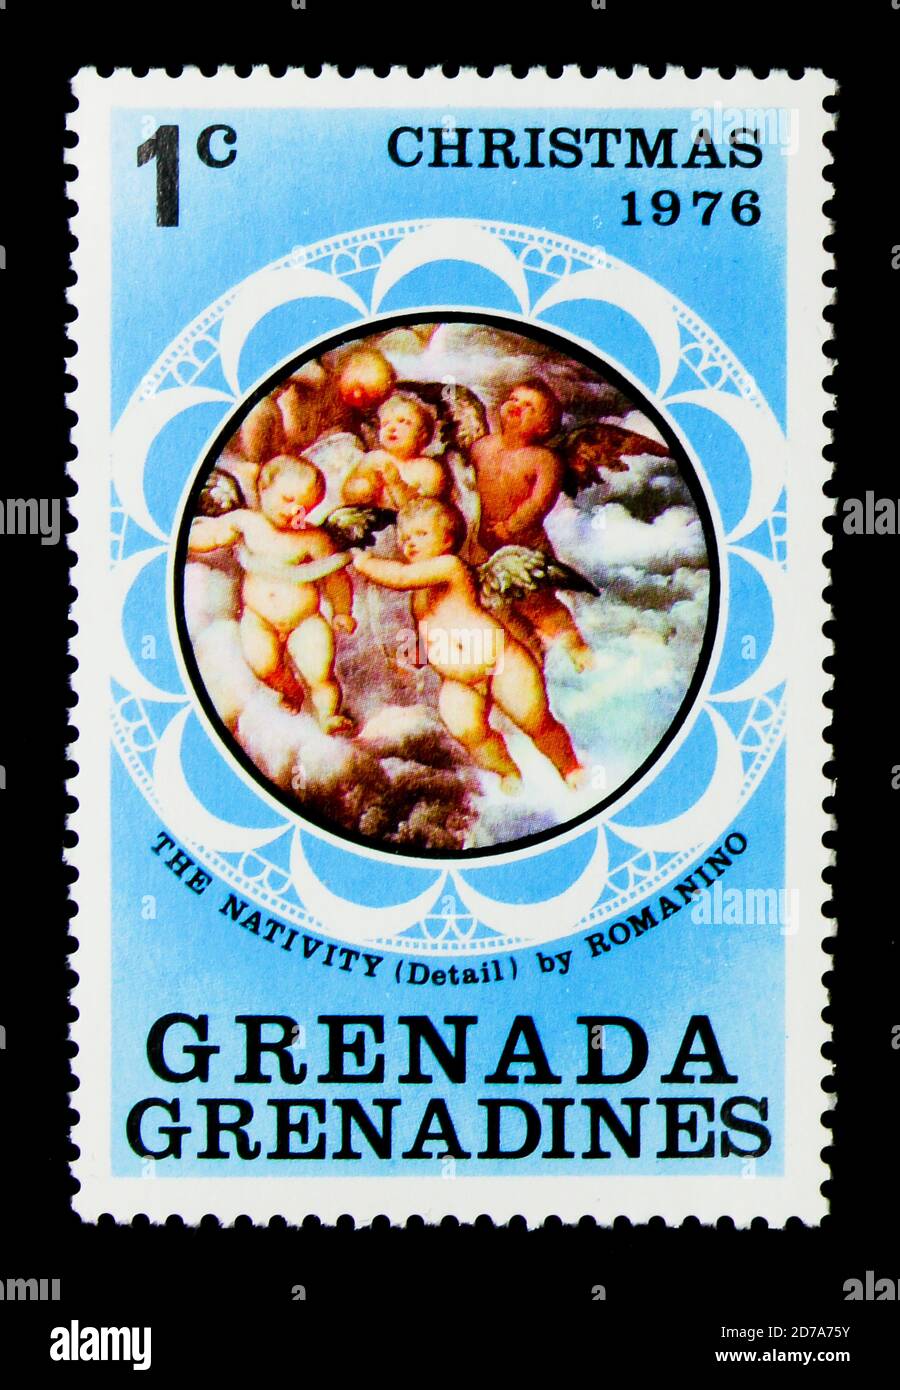 MOSCA, RUSSIA - 26 NOVEMBRE 2017: Un francobollo stampato a Grenada, Grenadine mostra la Natività, di Romanino, Natale 1976 serie, circa 1976 Foto Stock